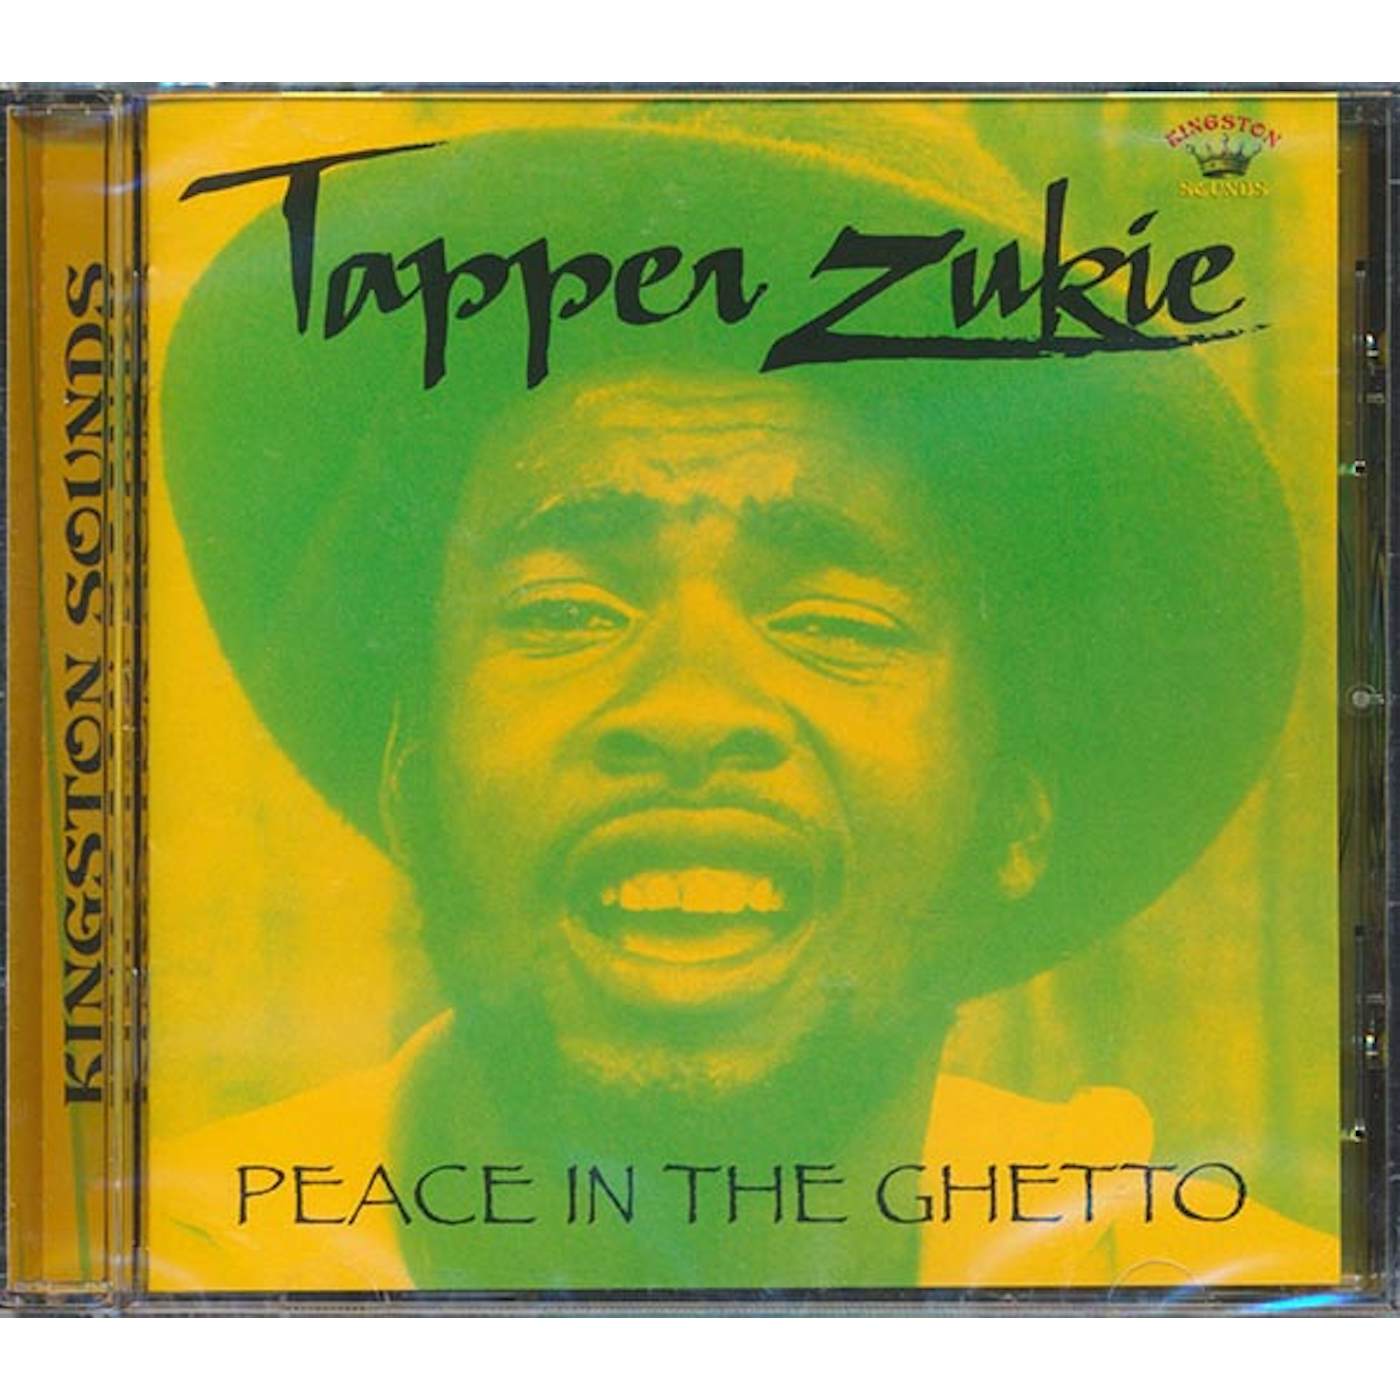 Tappa Zukie  CD -  Peace In The Ghetto